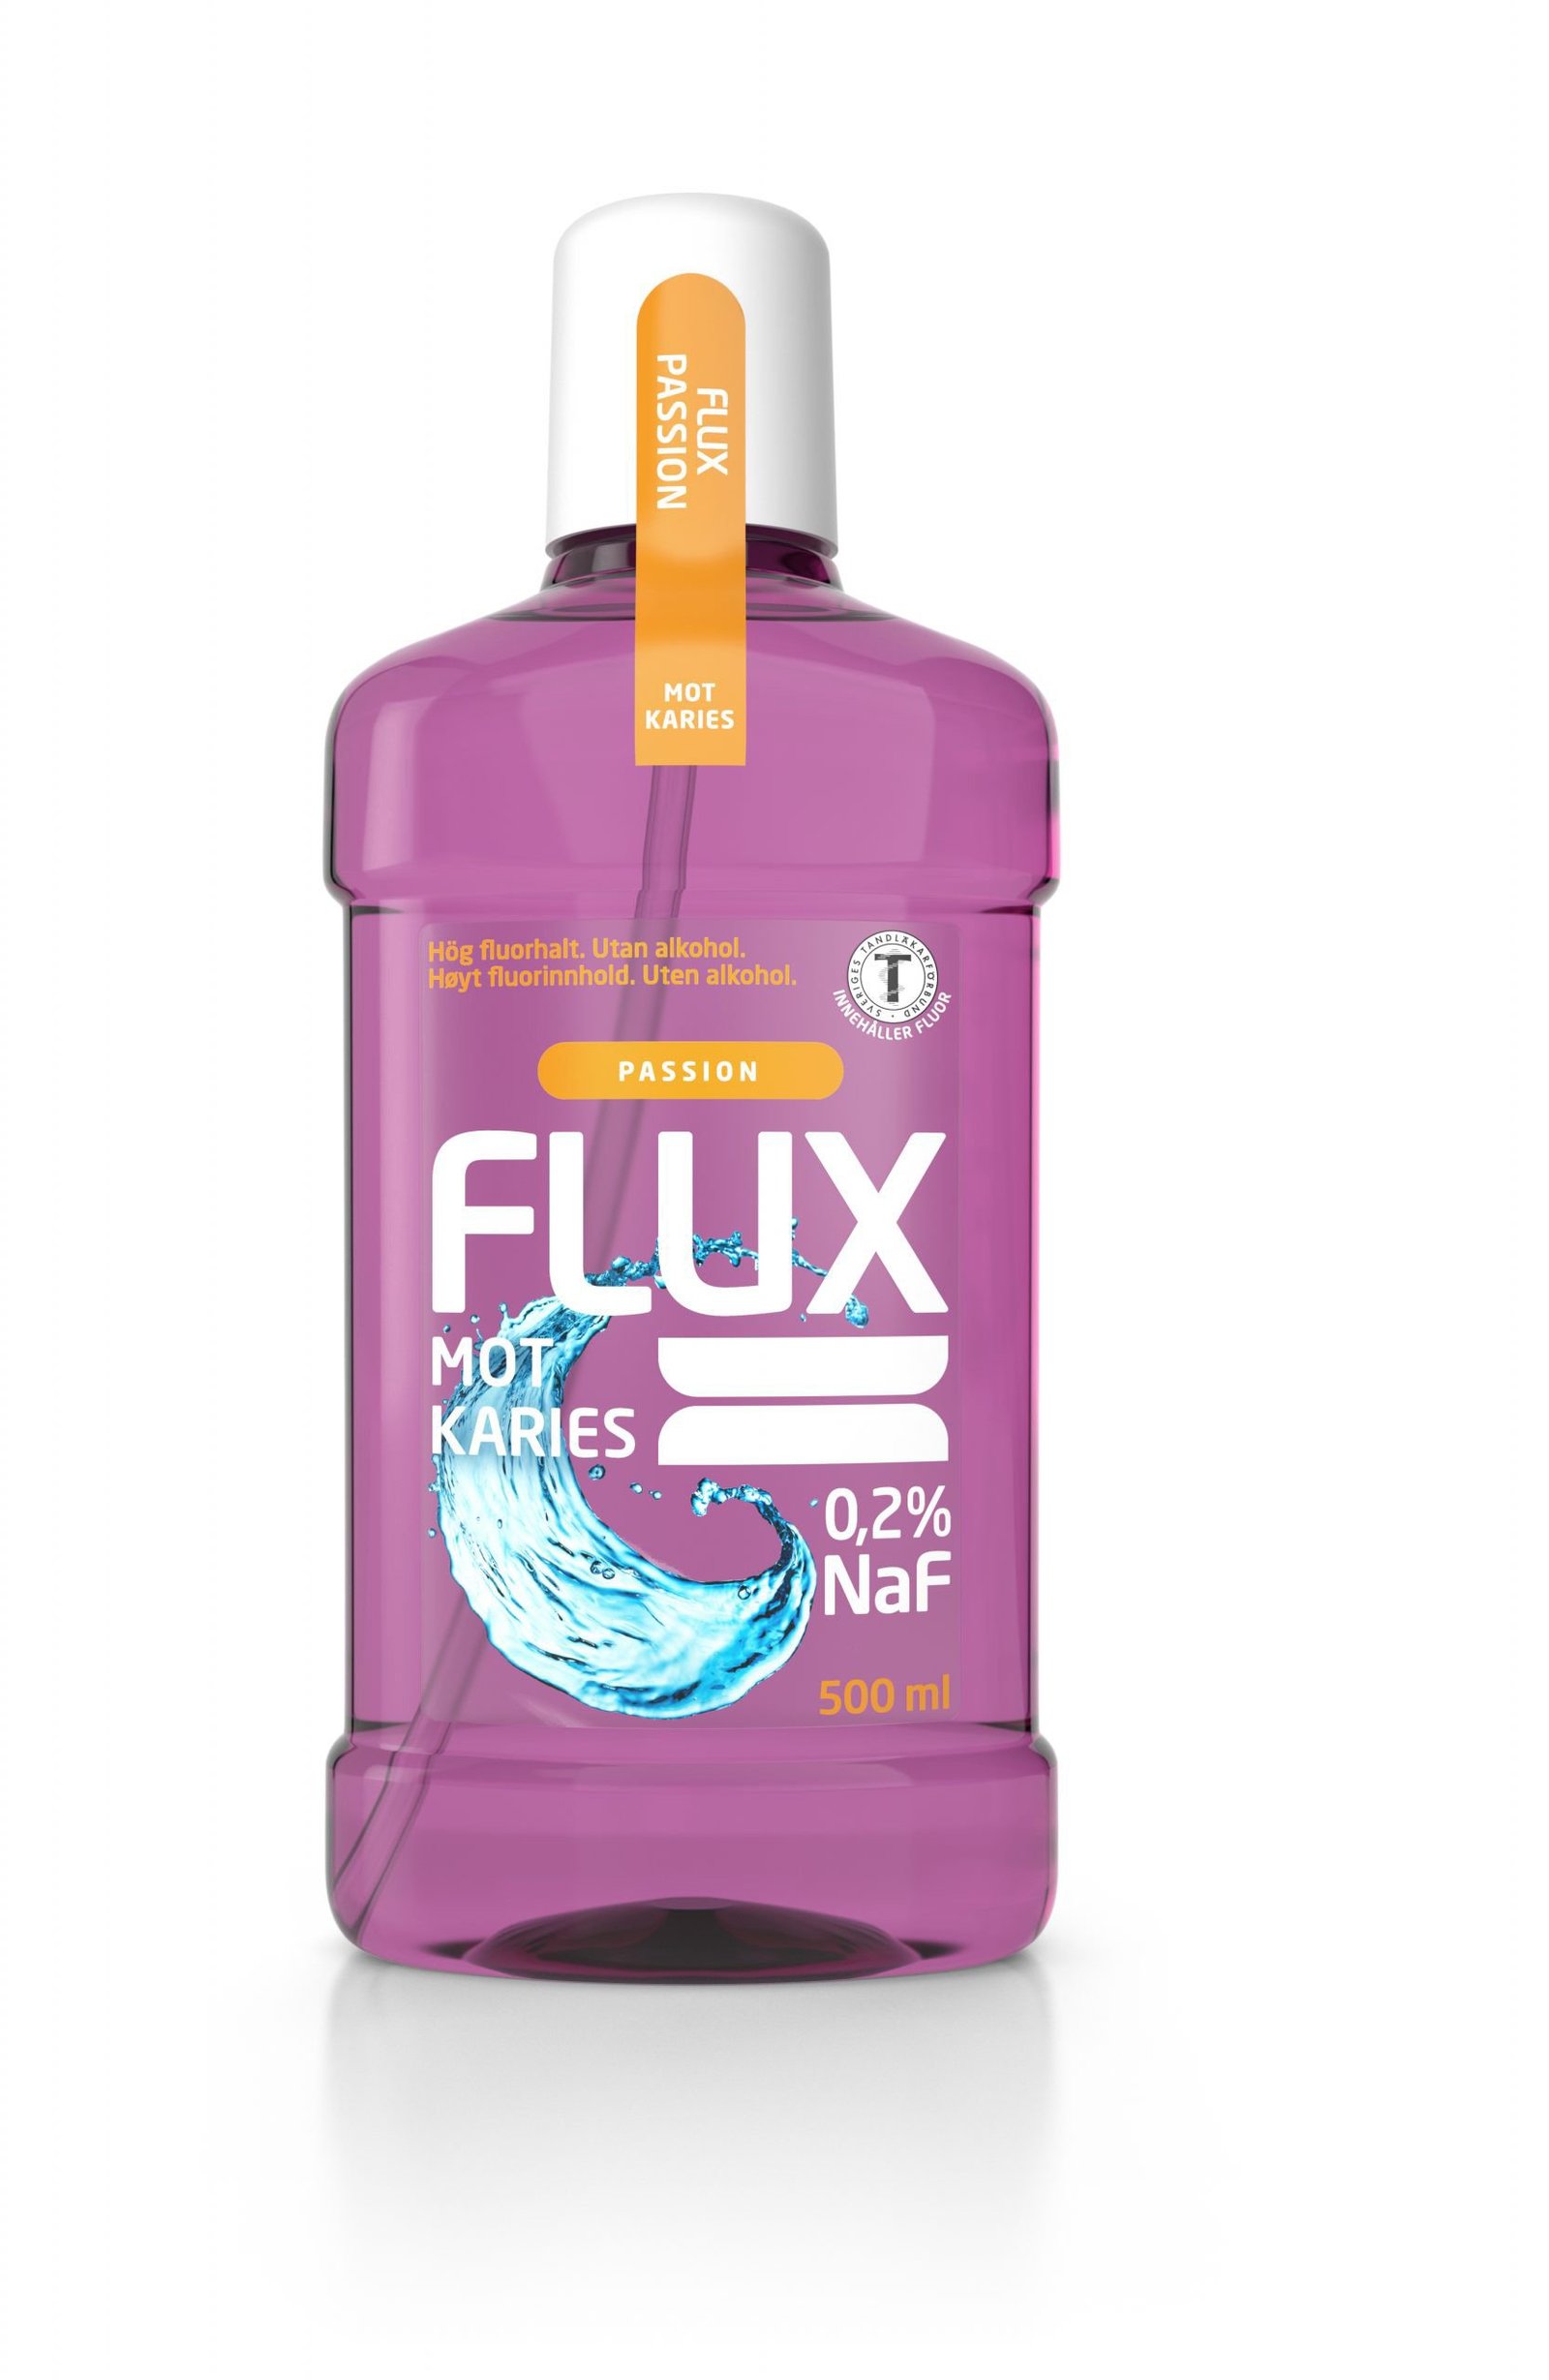 FLUX Passion 500 ml